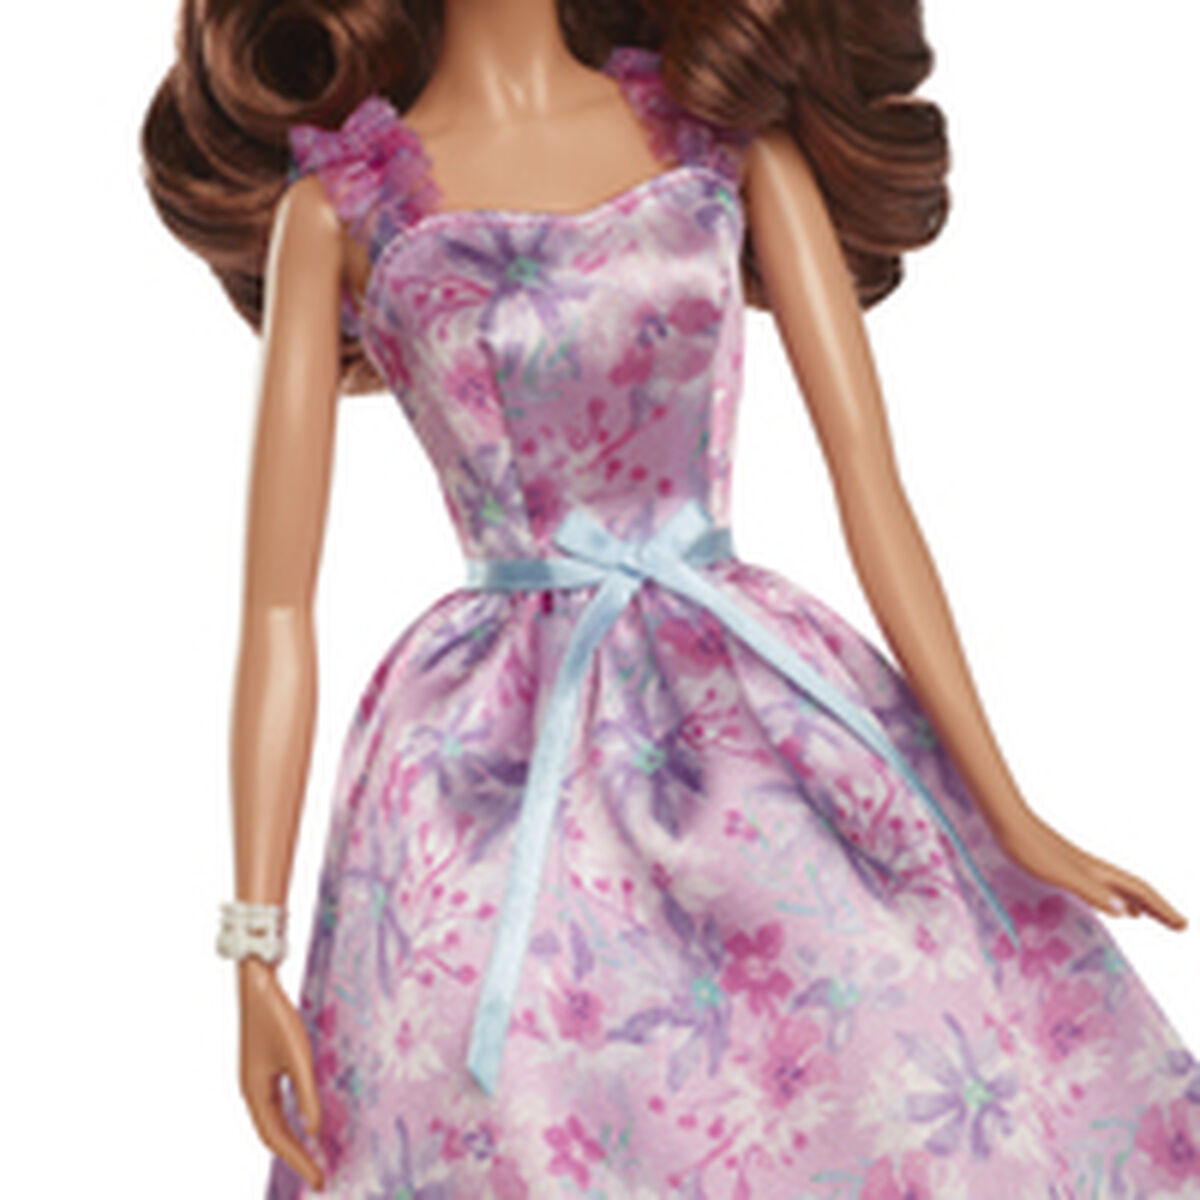 Docka Barbie Birthday Wishes-Leksaker och spel, Dockor och actionfigurer-Barbie-peaceofhome.se